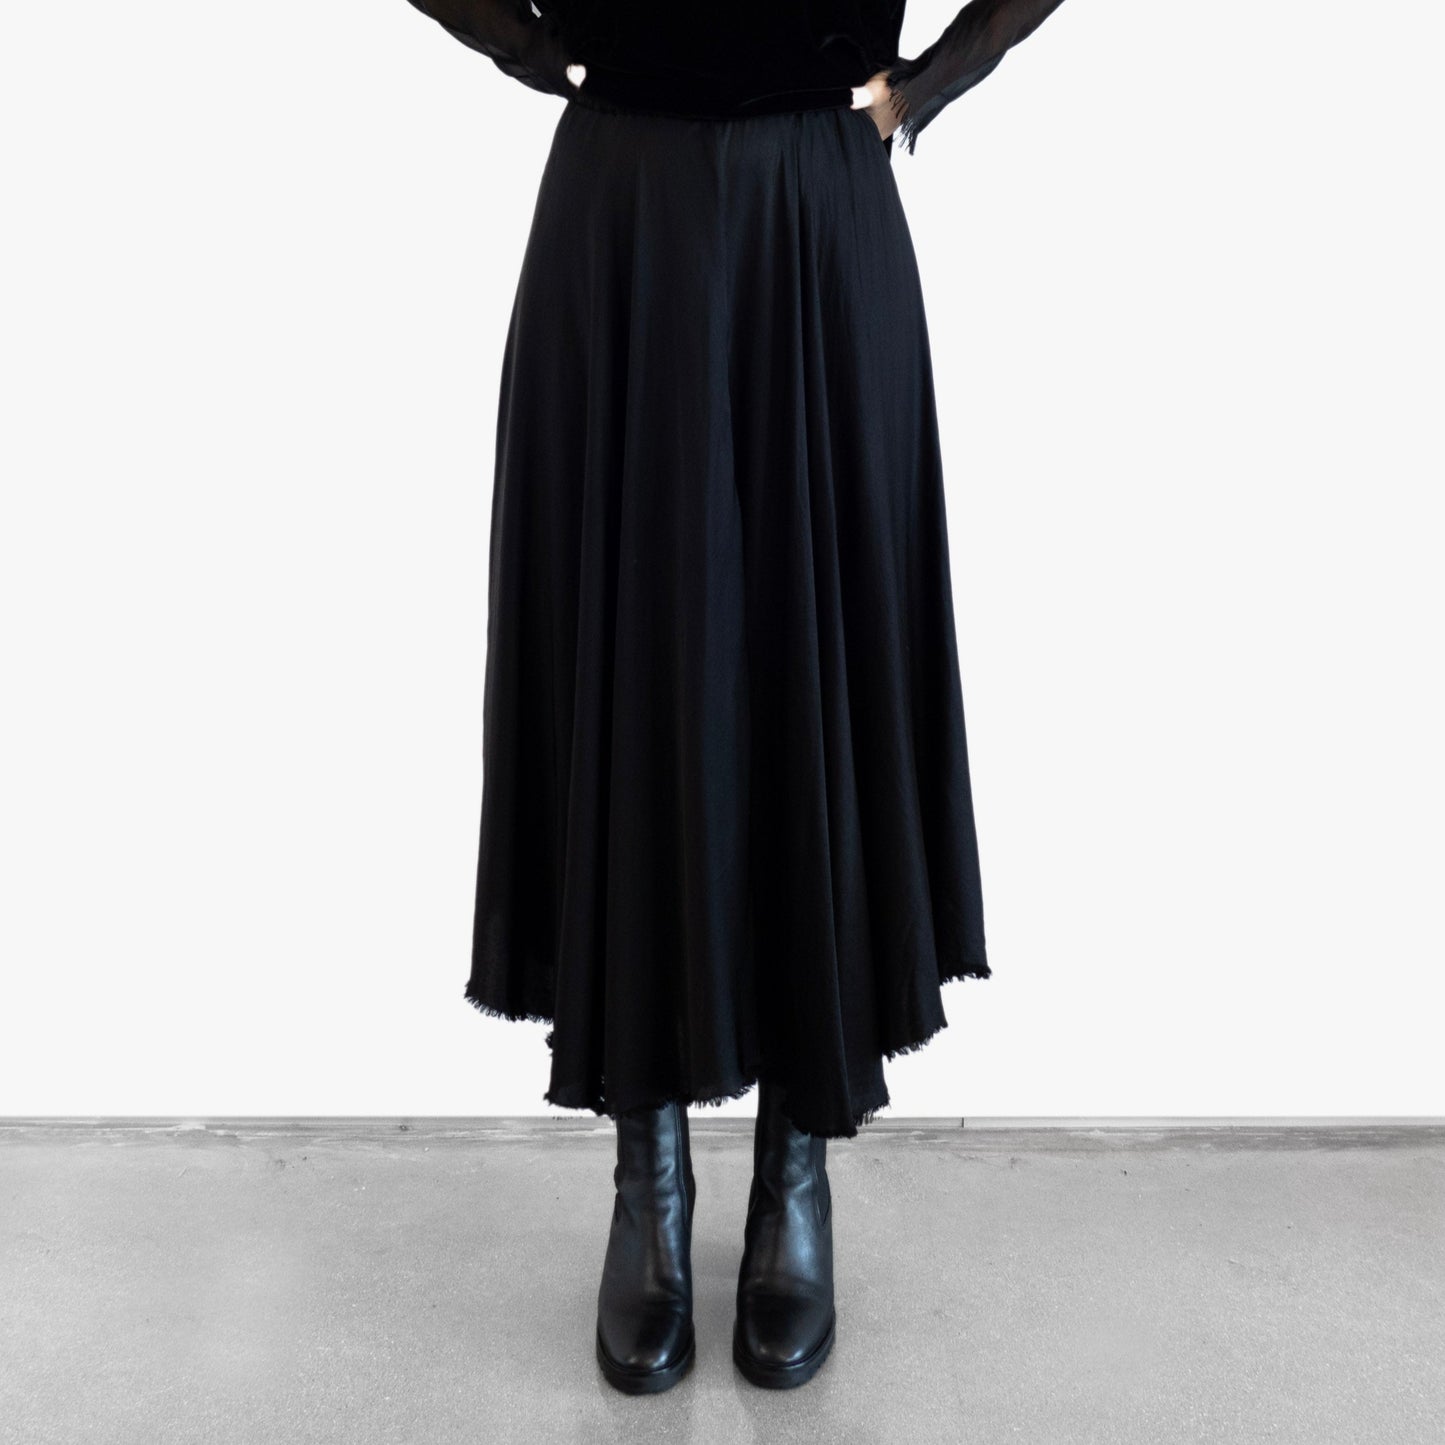 Model wearing a black velvet blouse and black silk skirt